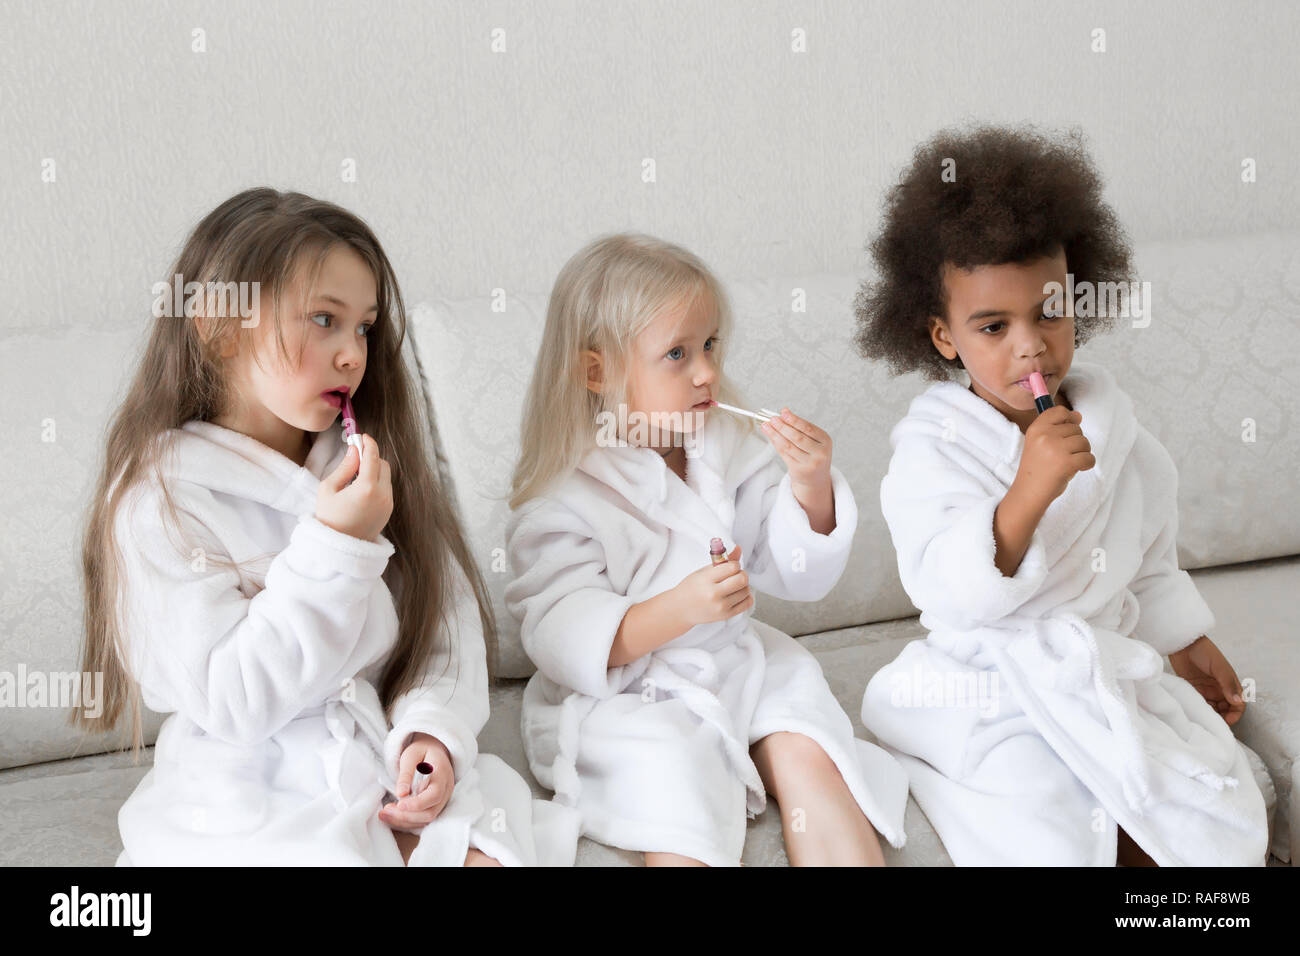 Drei kleine Mädchen in weißen Kitteln nach einer Dusche spielen mit Make-up  Ihren Lippen Farbe mit roten Lippenstift Stockfotografie - Alamy